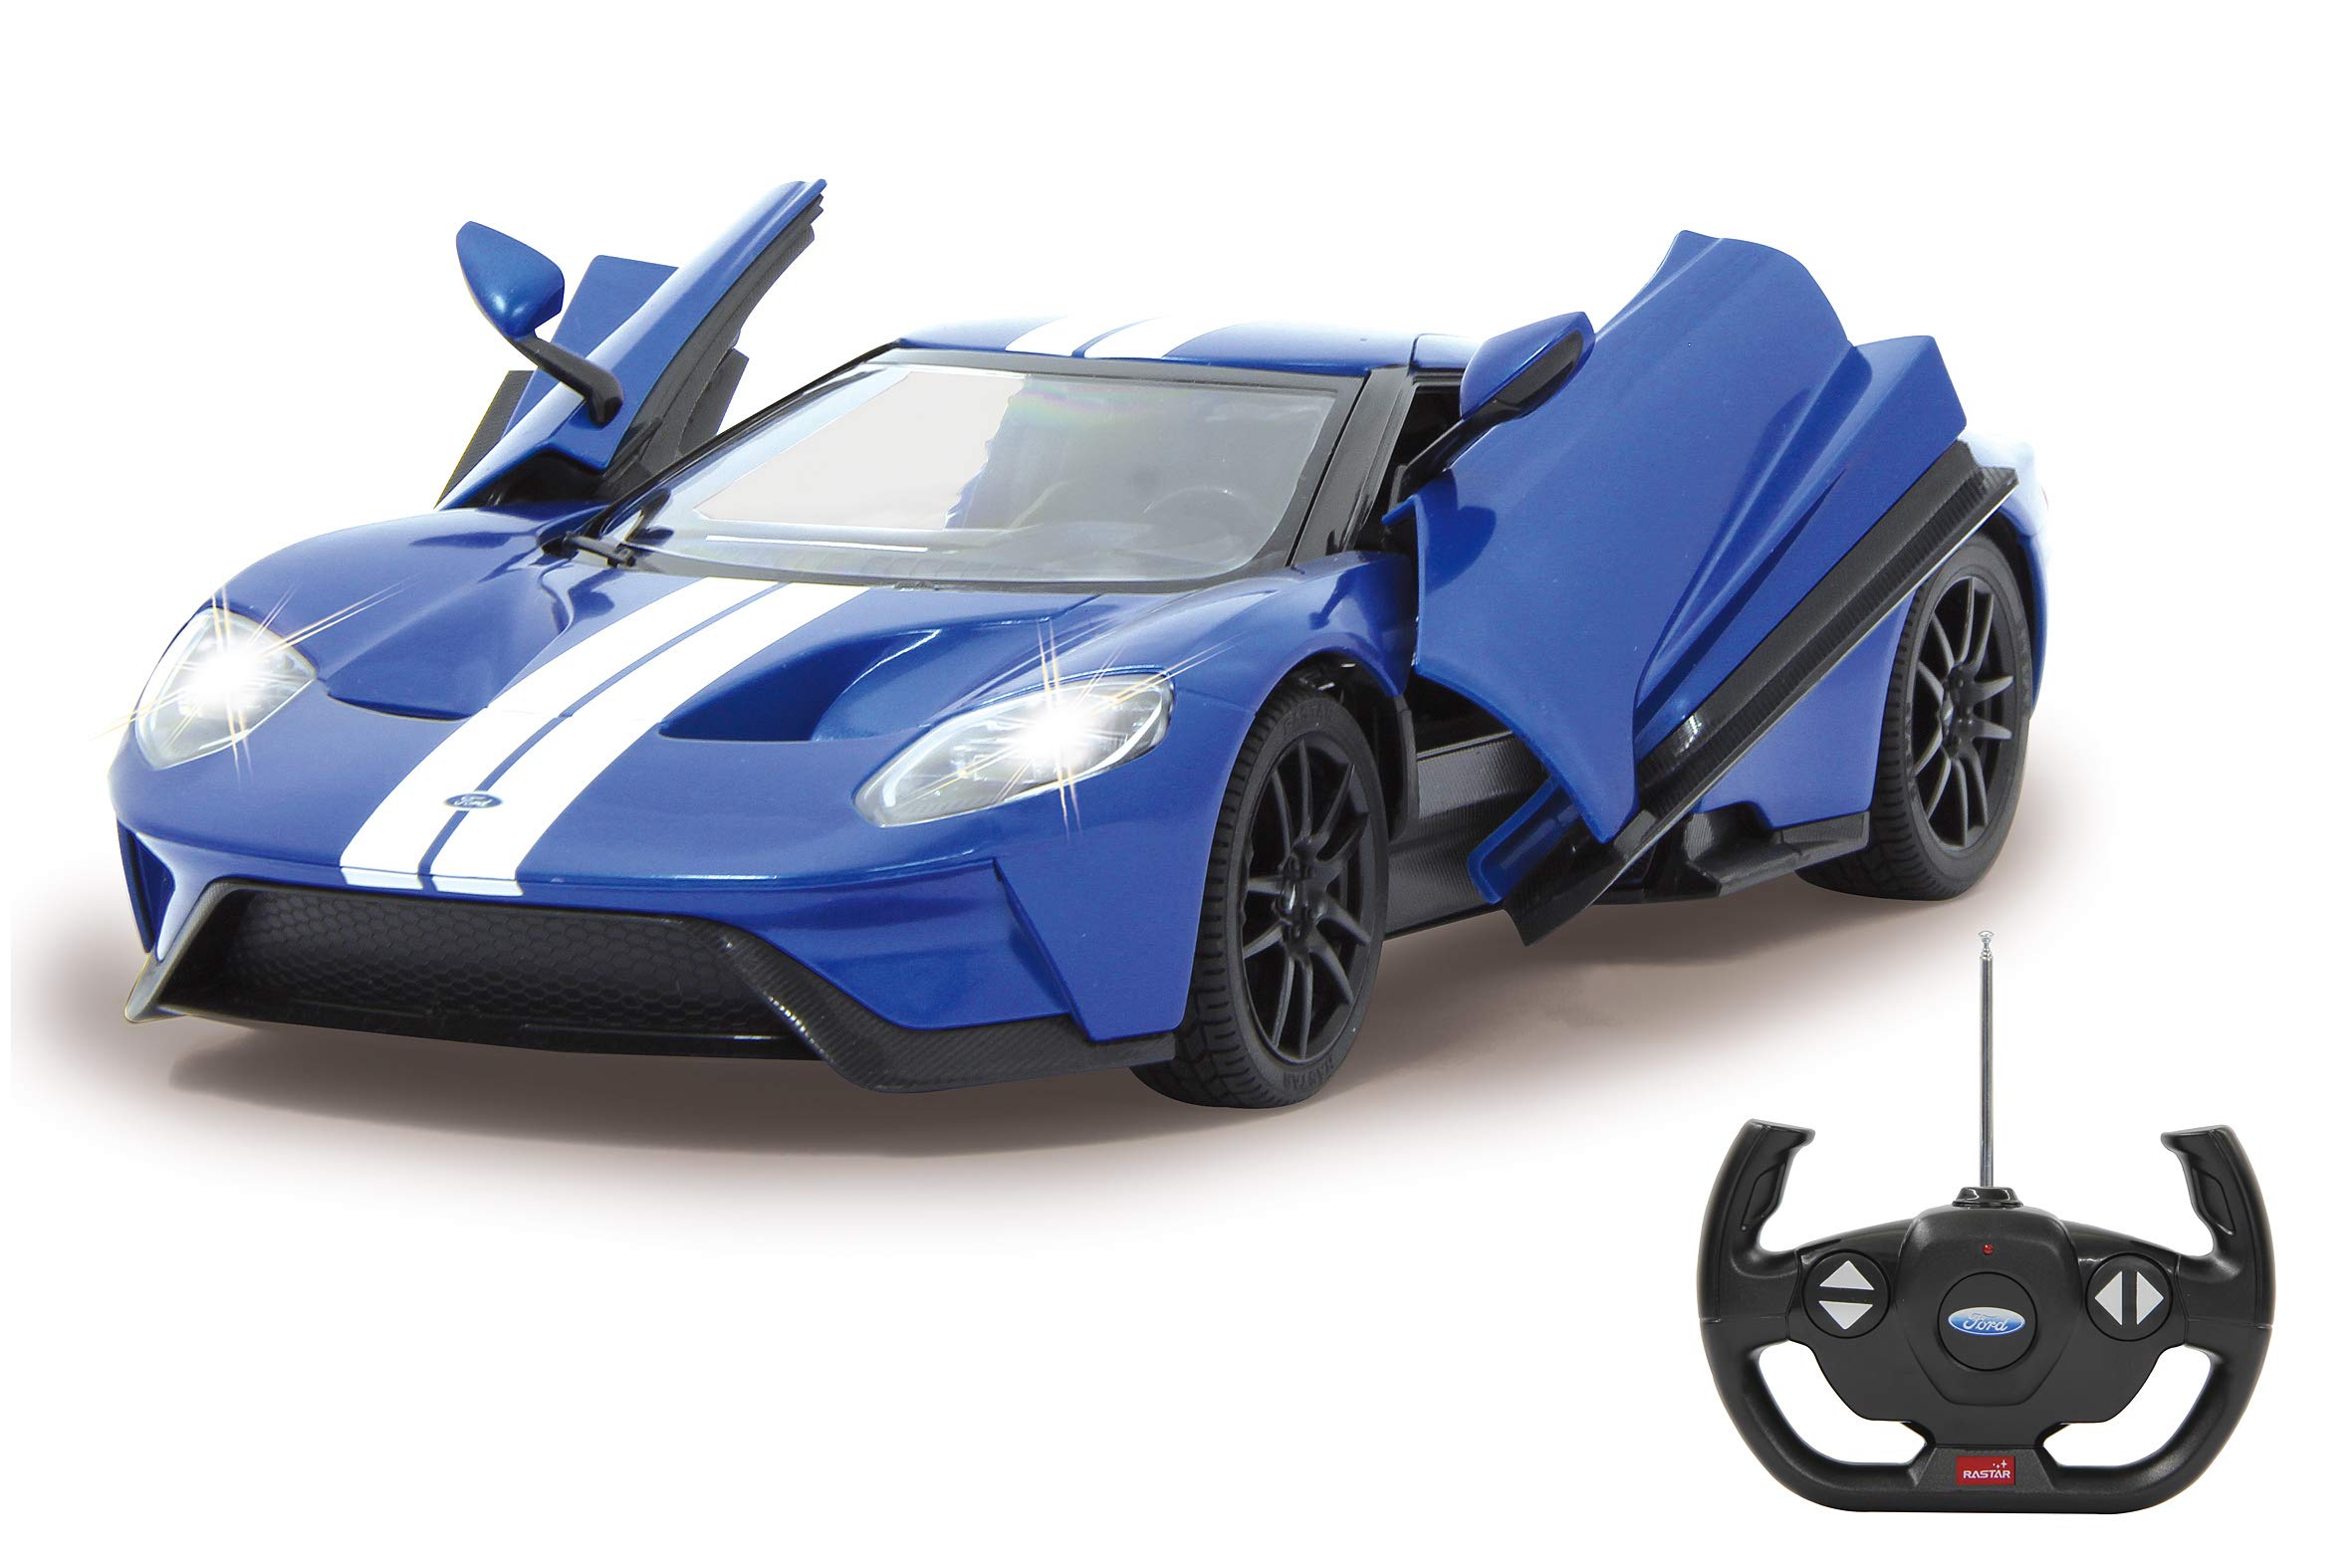 Ford GT 1:14 blau Tür manuell 2,4GHz - offiziell lizenziert, ca 1 Std fahren, 11 Kmh, perfekt nachgebildete Details, detaillierter Innenraum, hochwertige Verarbeitung,LED Licht